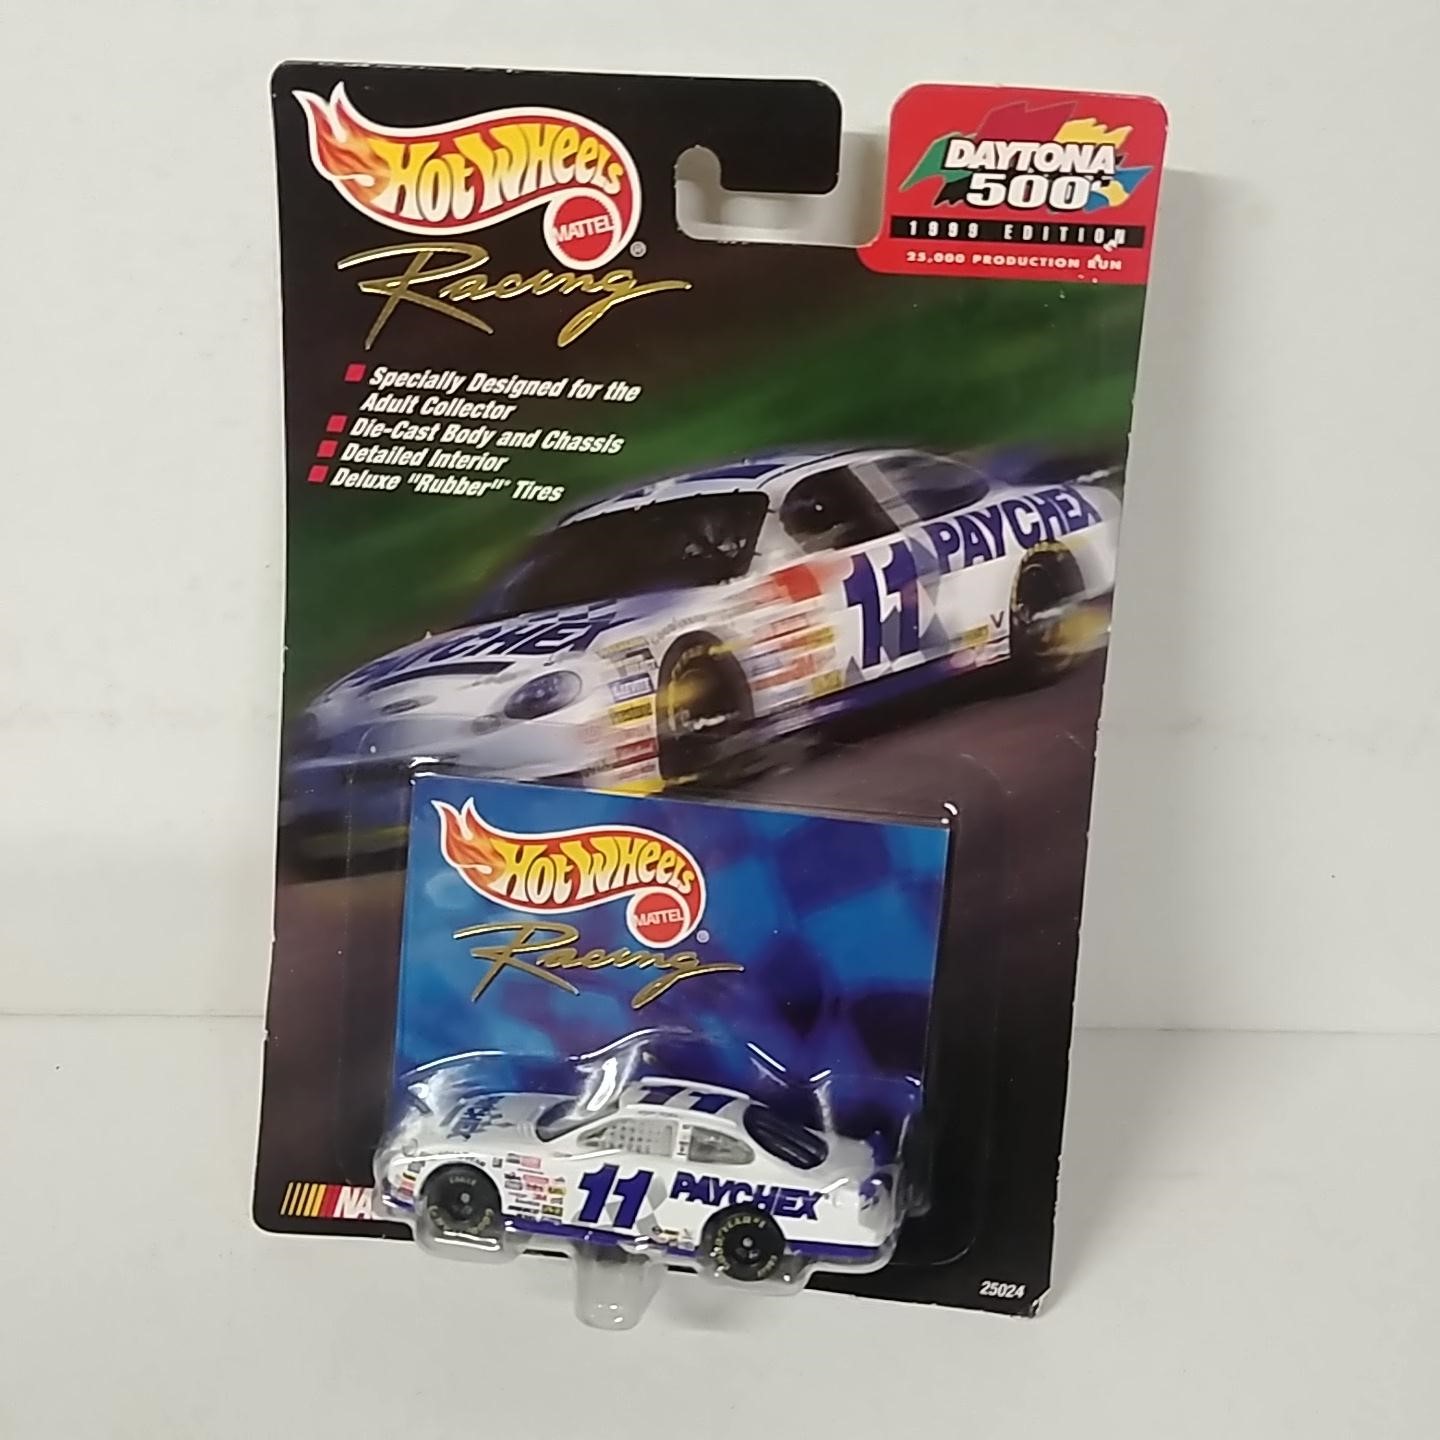 1999 Bret Bodine 1/64th PAYCHEX "Daytona 500" car